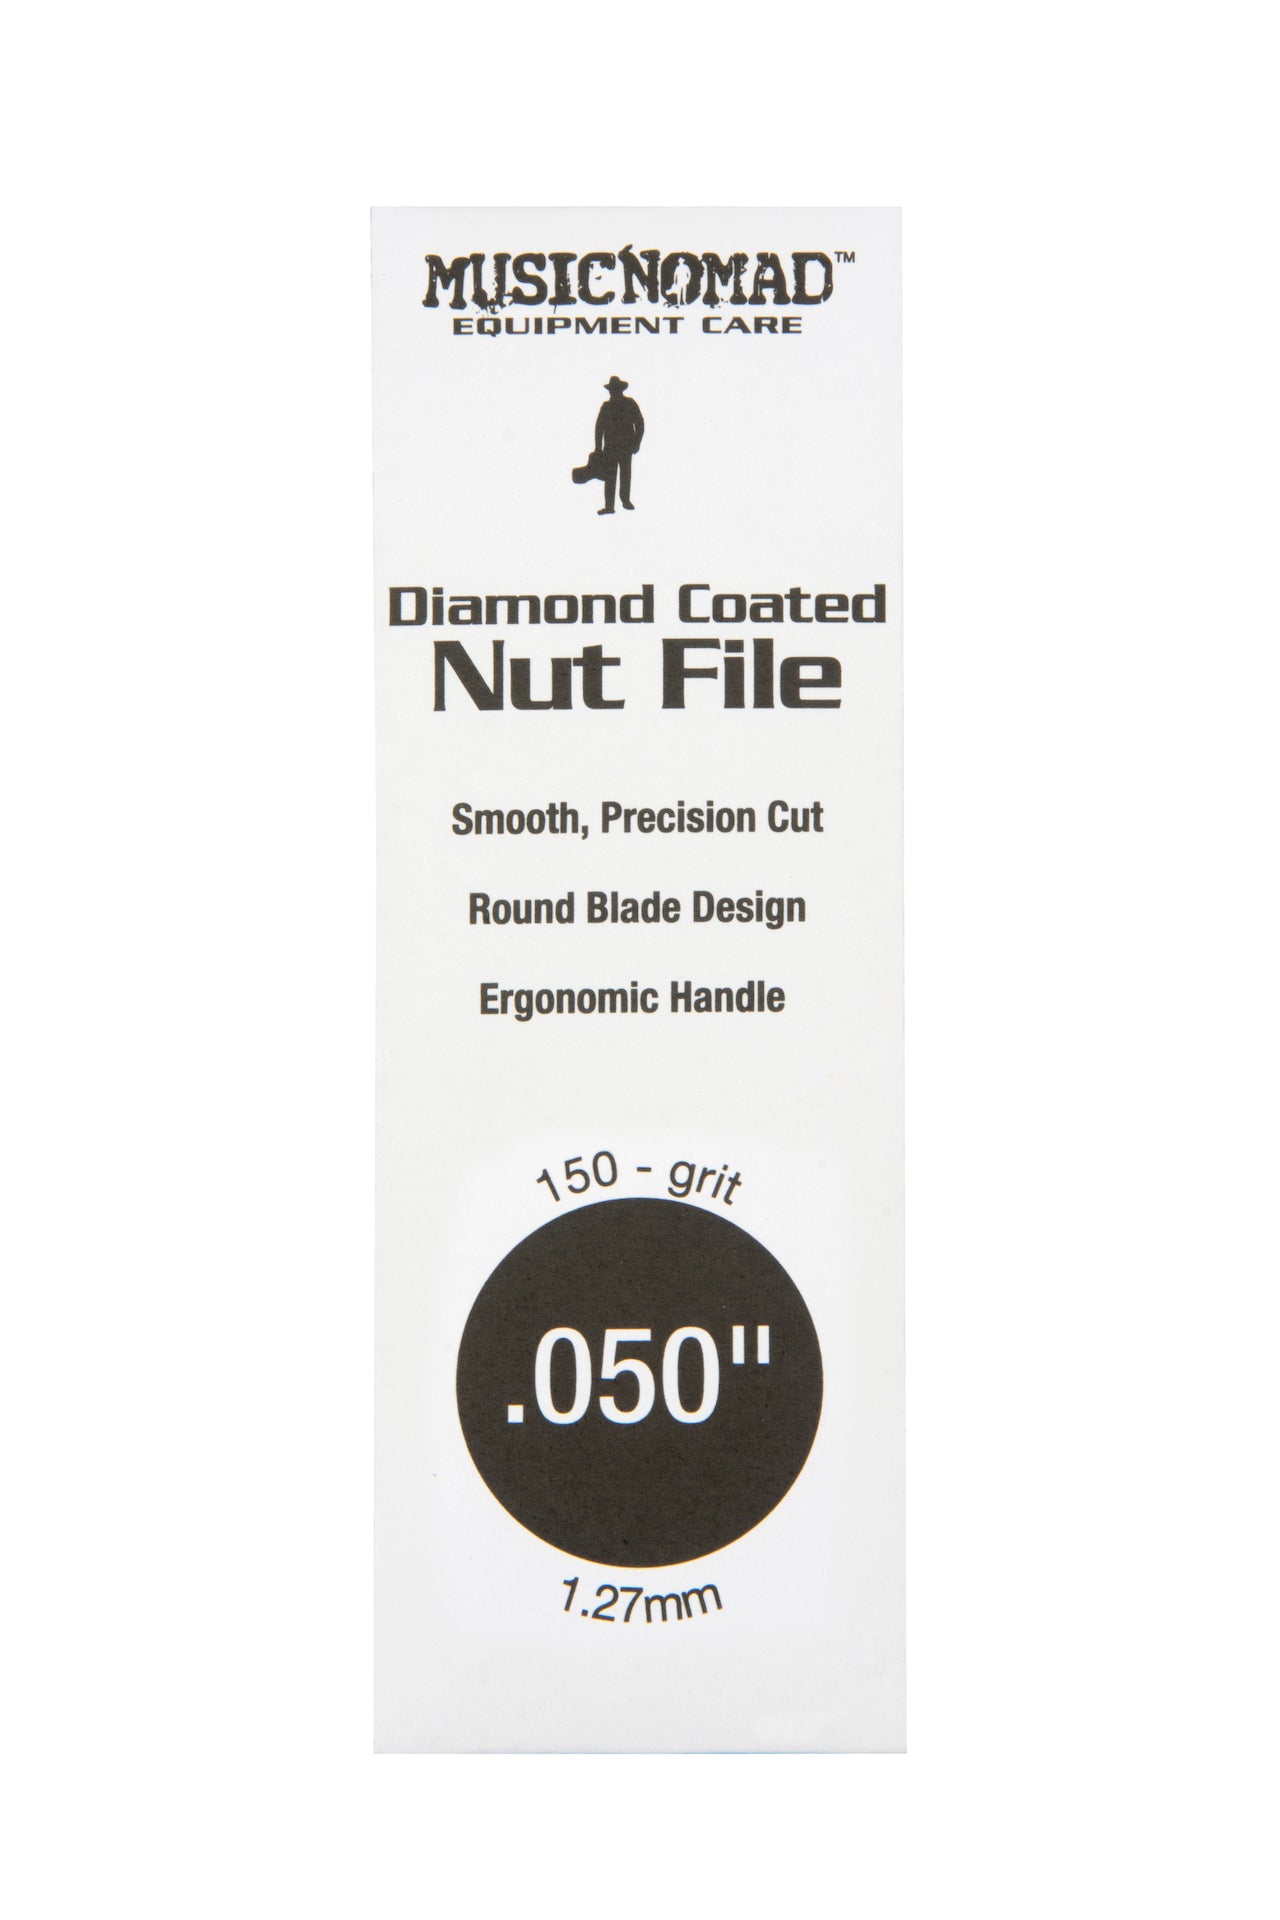 Music Nomad Diamond Coated Nut File Singles - HIENDGUITAR .050" .050" musicnomad musicnomad